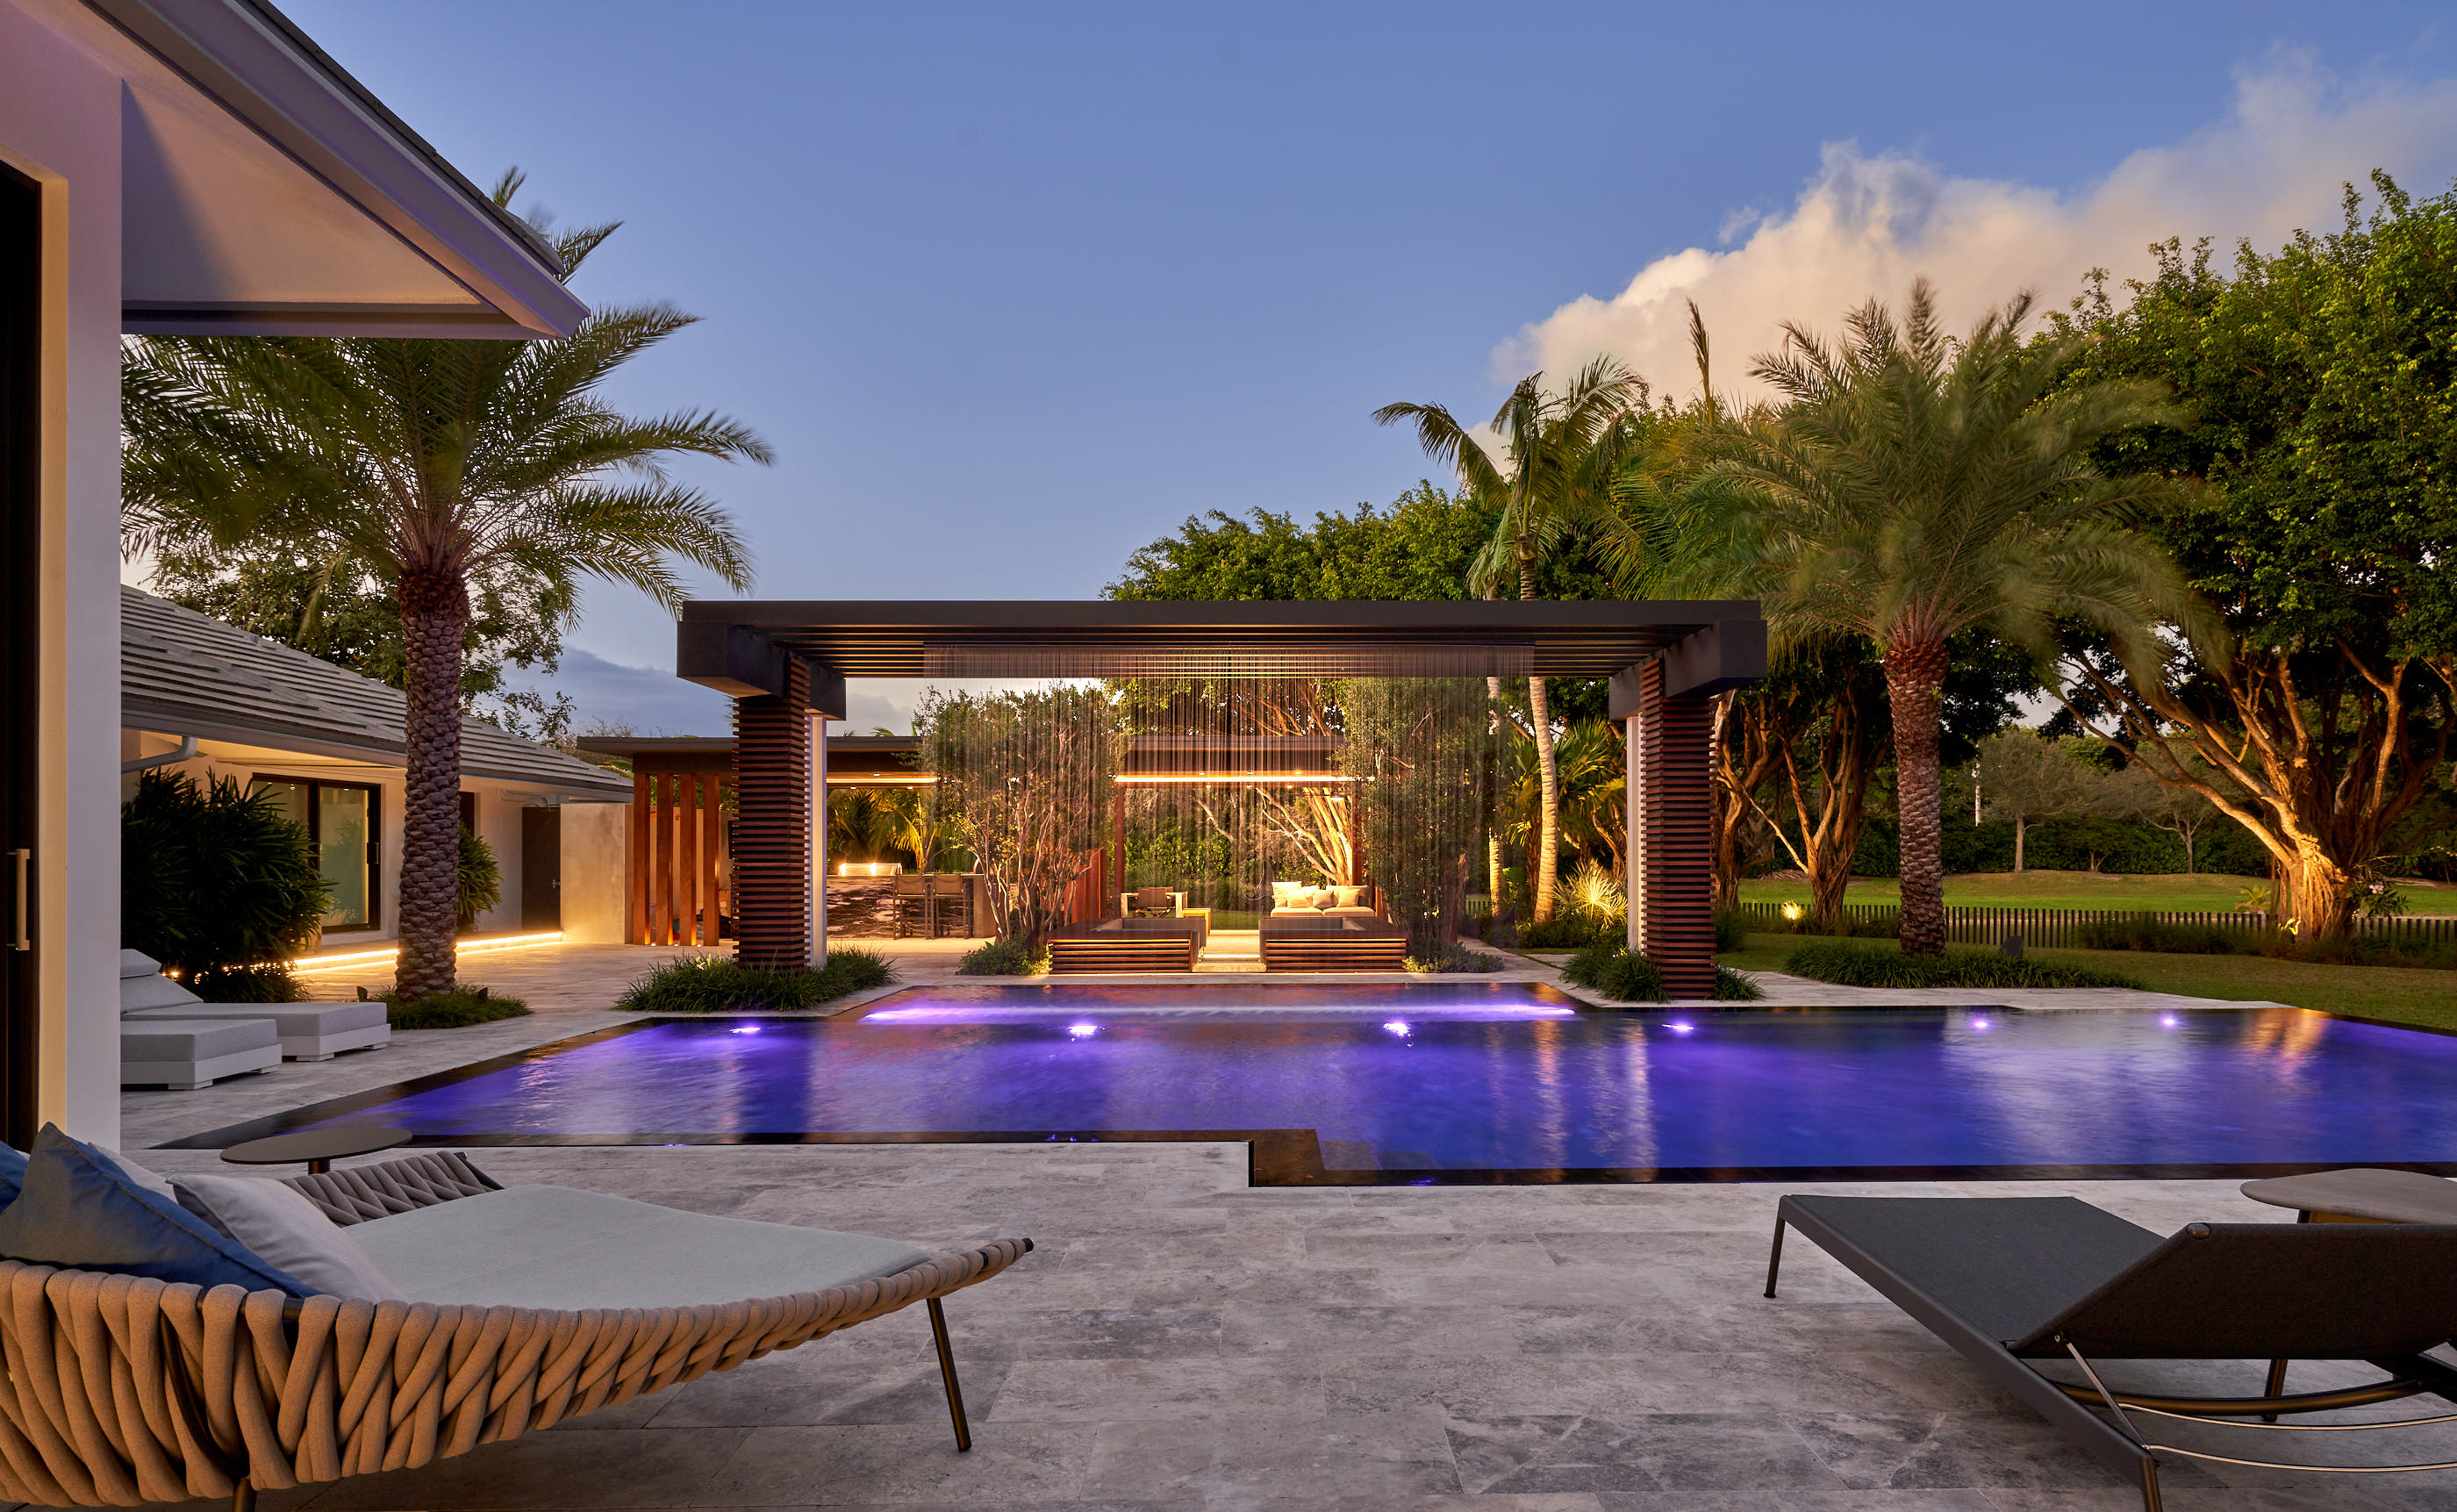 Pepe-Calderin-Design-Miami-Florida-Pool-Deck-Twilight